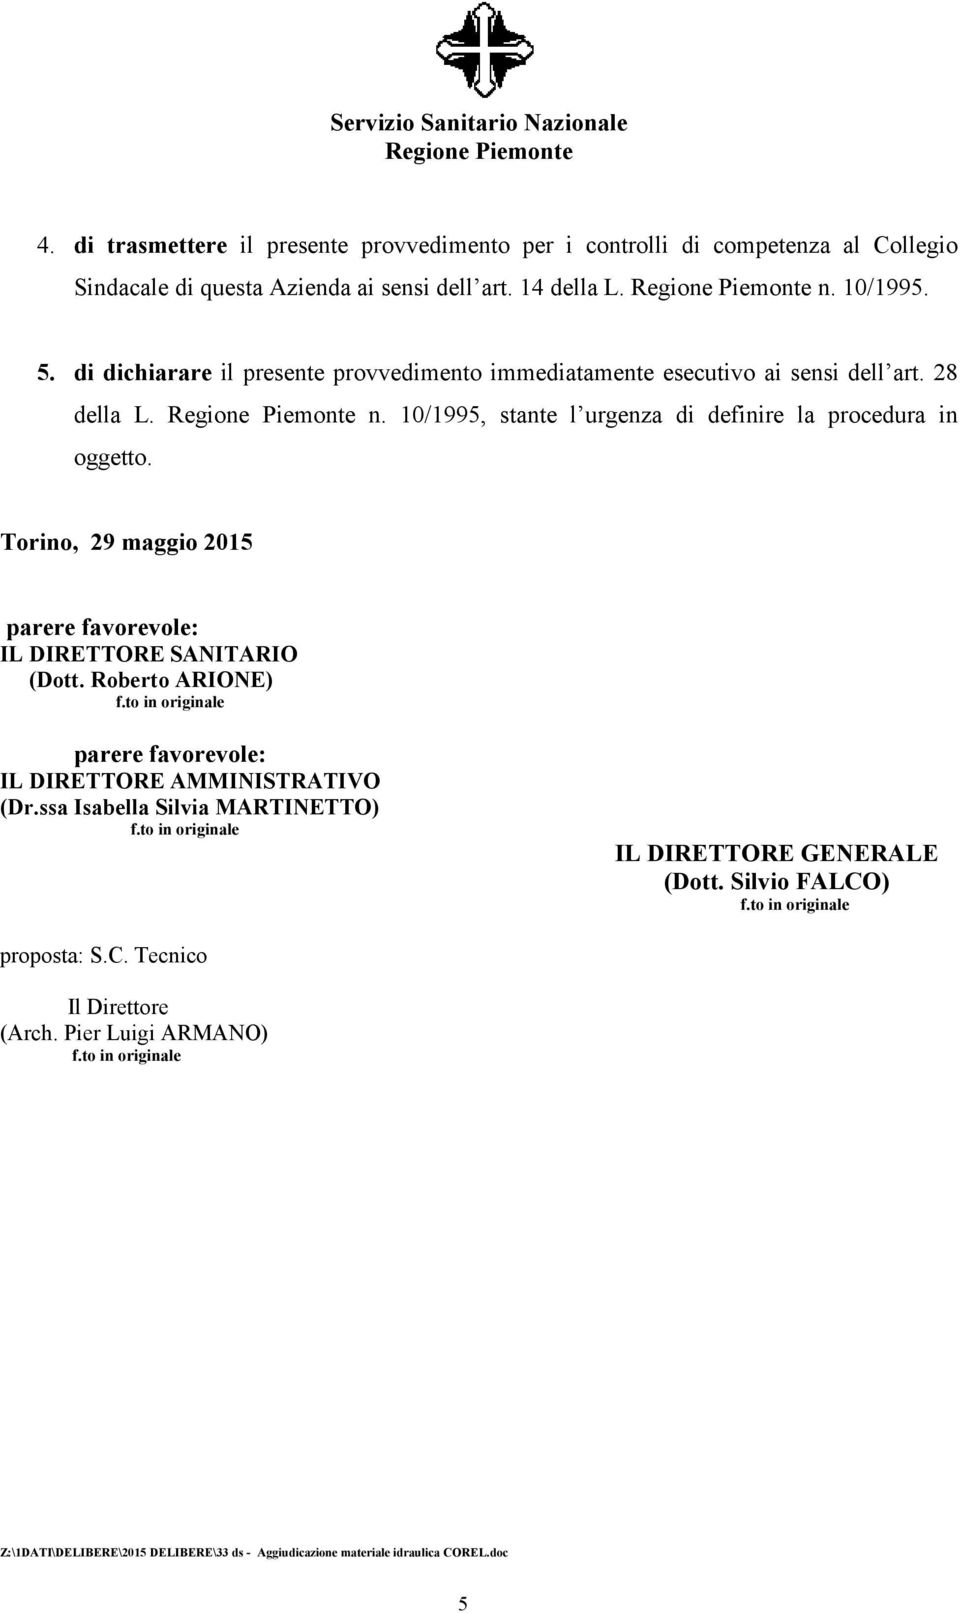 Torino, 29 maggio 2015 parere favorevole: IL DIRETTORE SANITARIO (Dott. Roberto ARIONE) parere favorevole: IL DIRETTORE AMMINISTRATIVO (Dr.